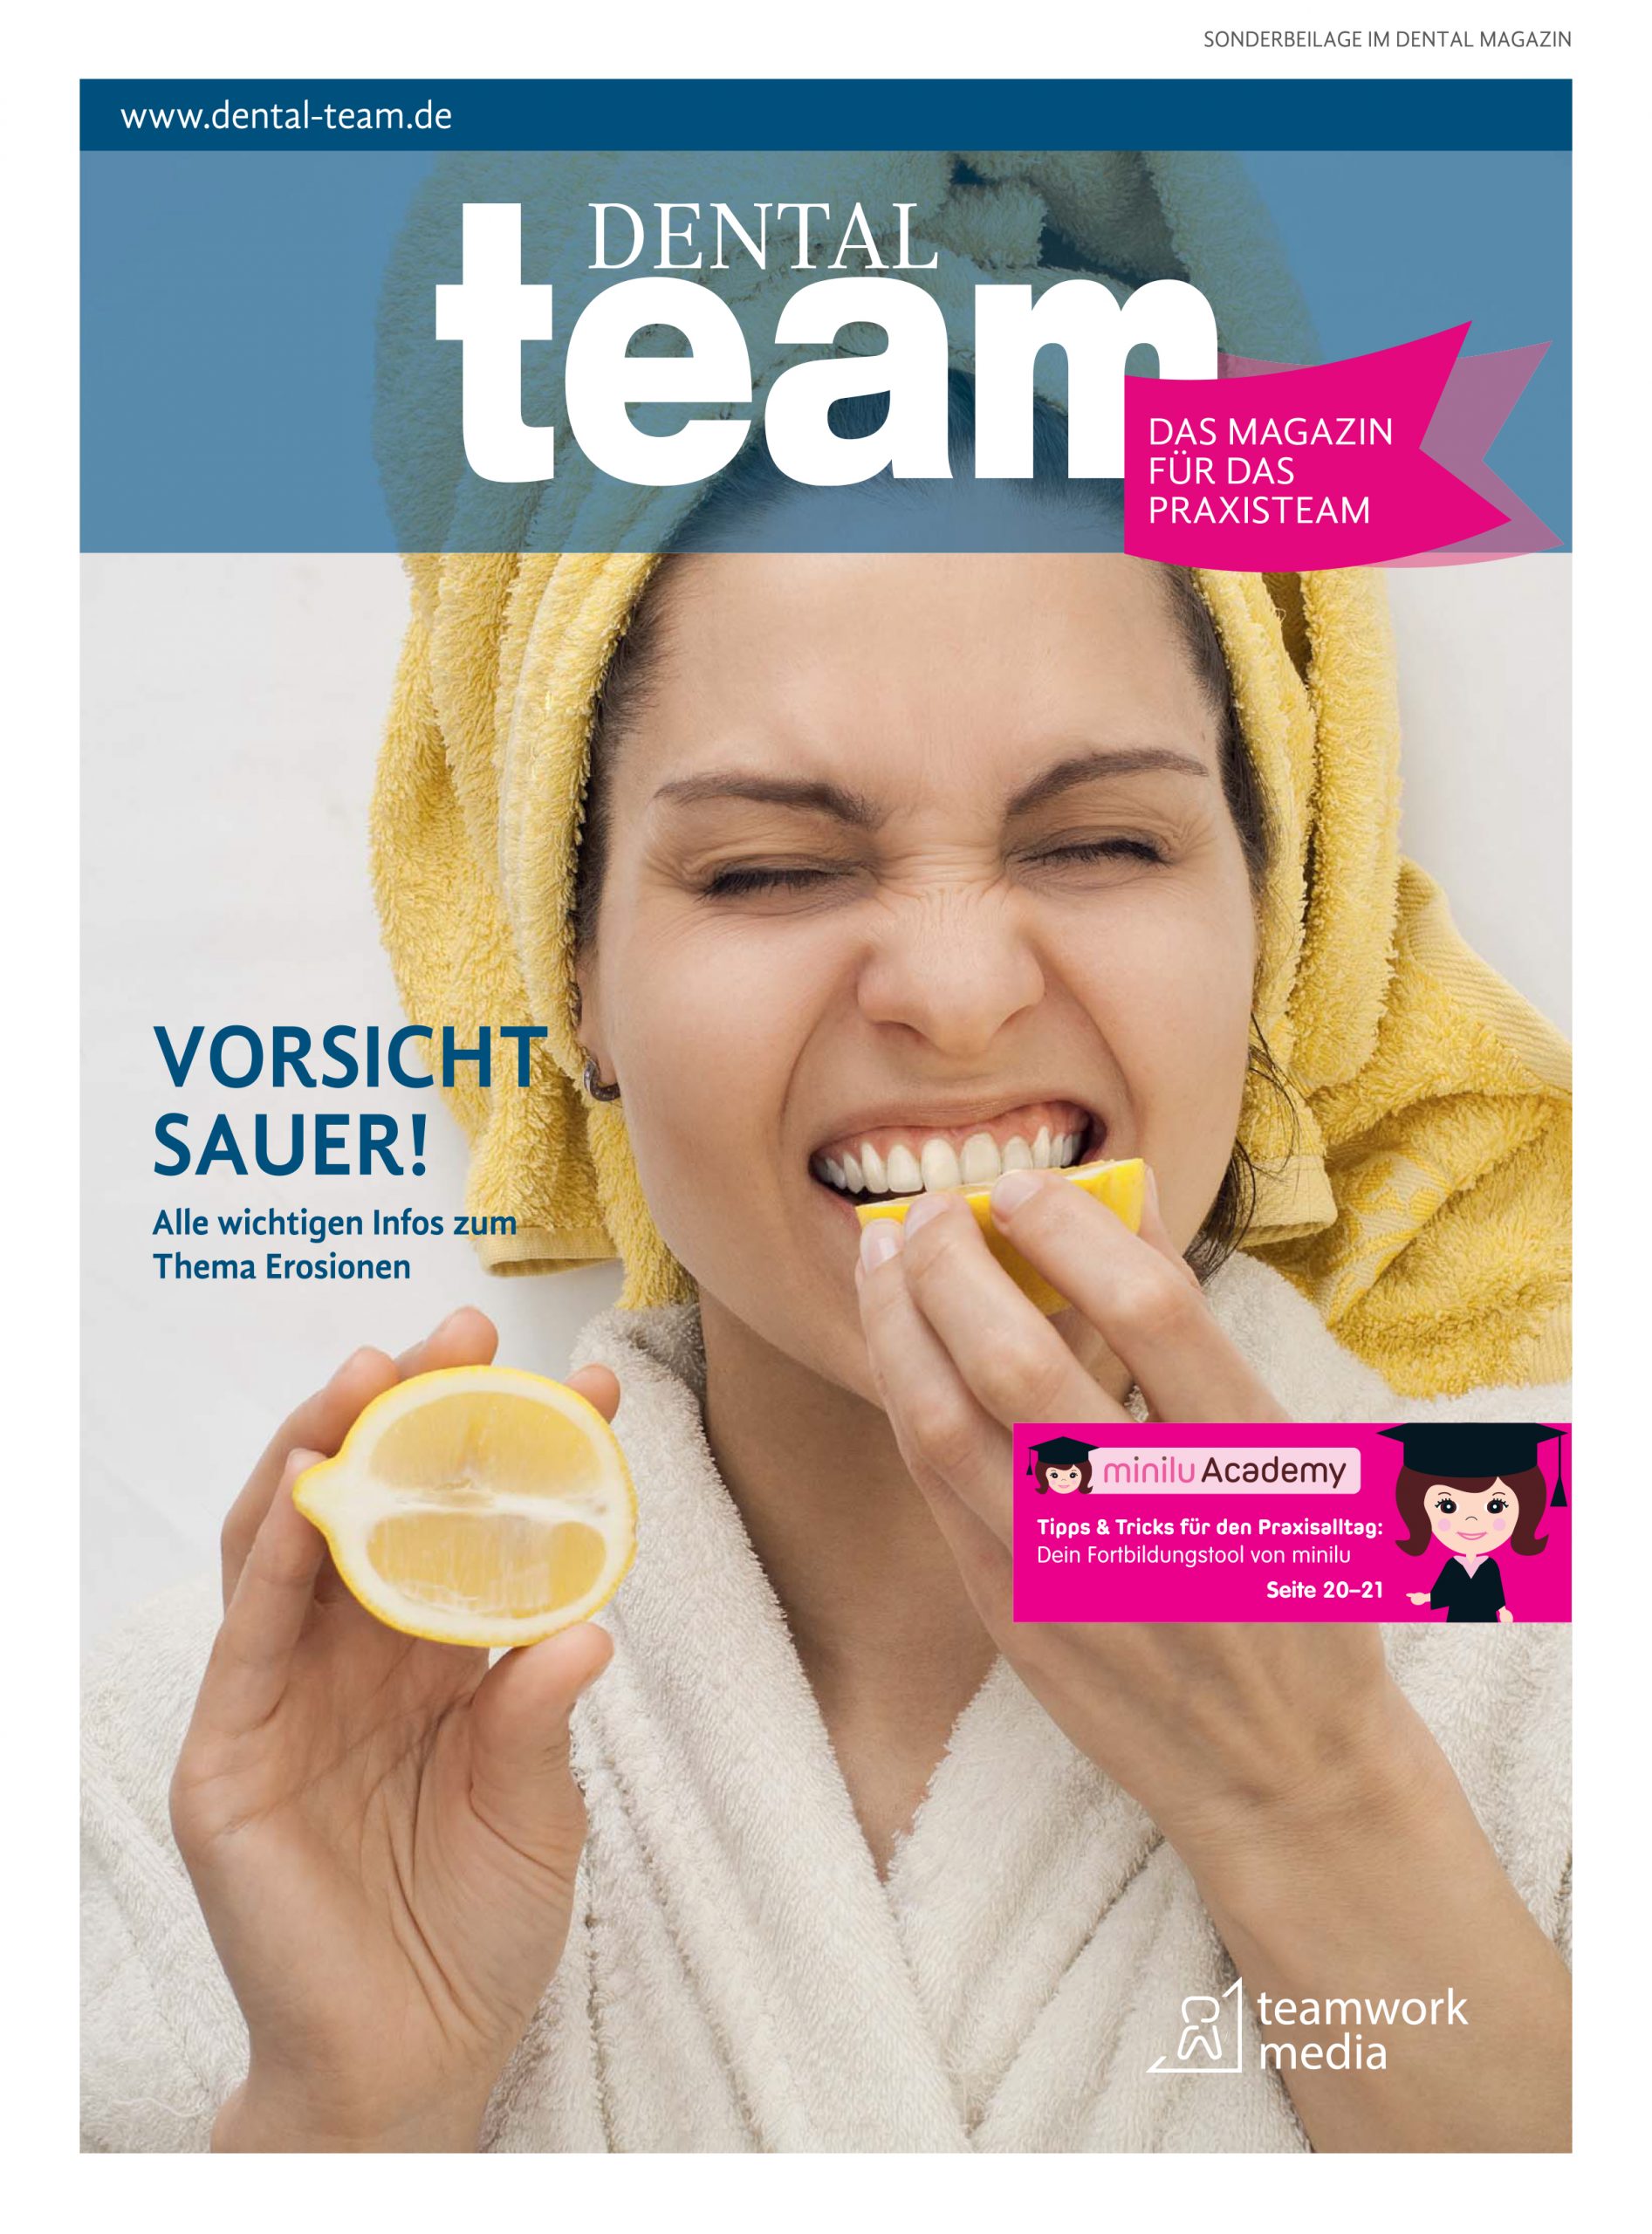 Das Titelblatt des DENTAL team Magazins zeigt eine Frau, die in eine Zitrone beißt.